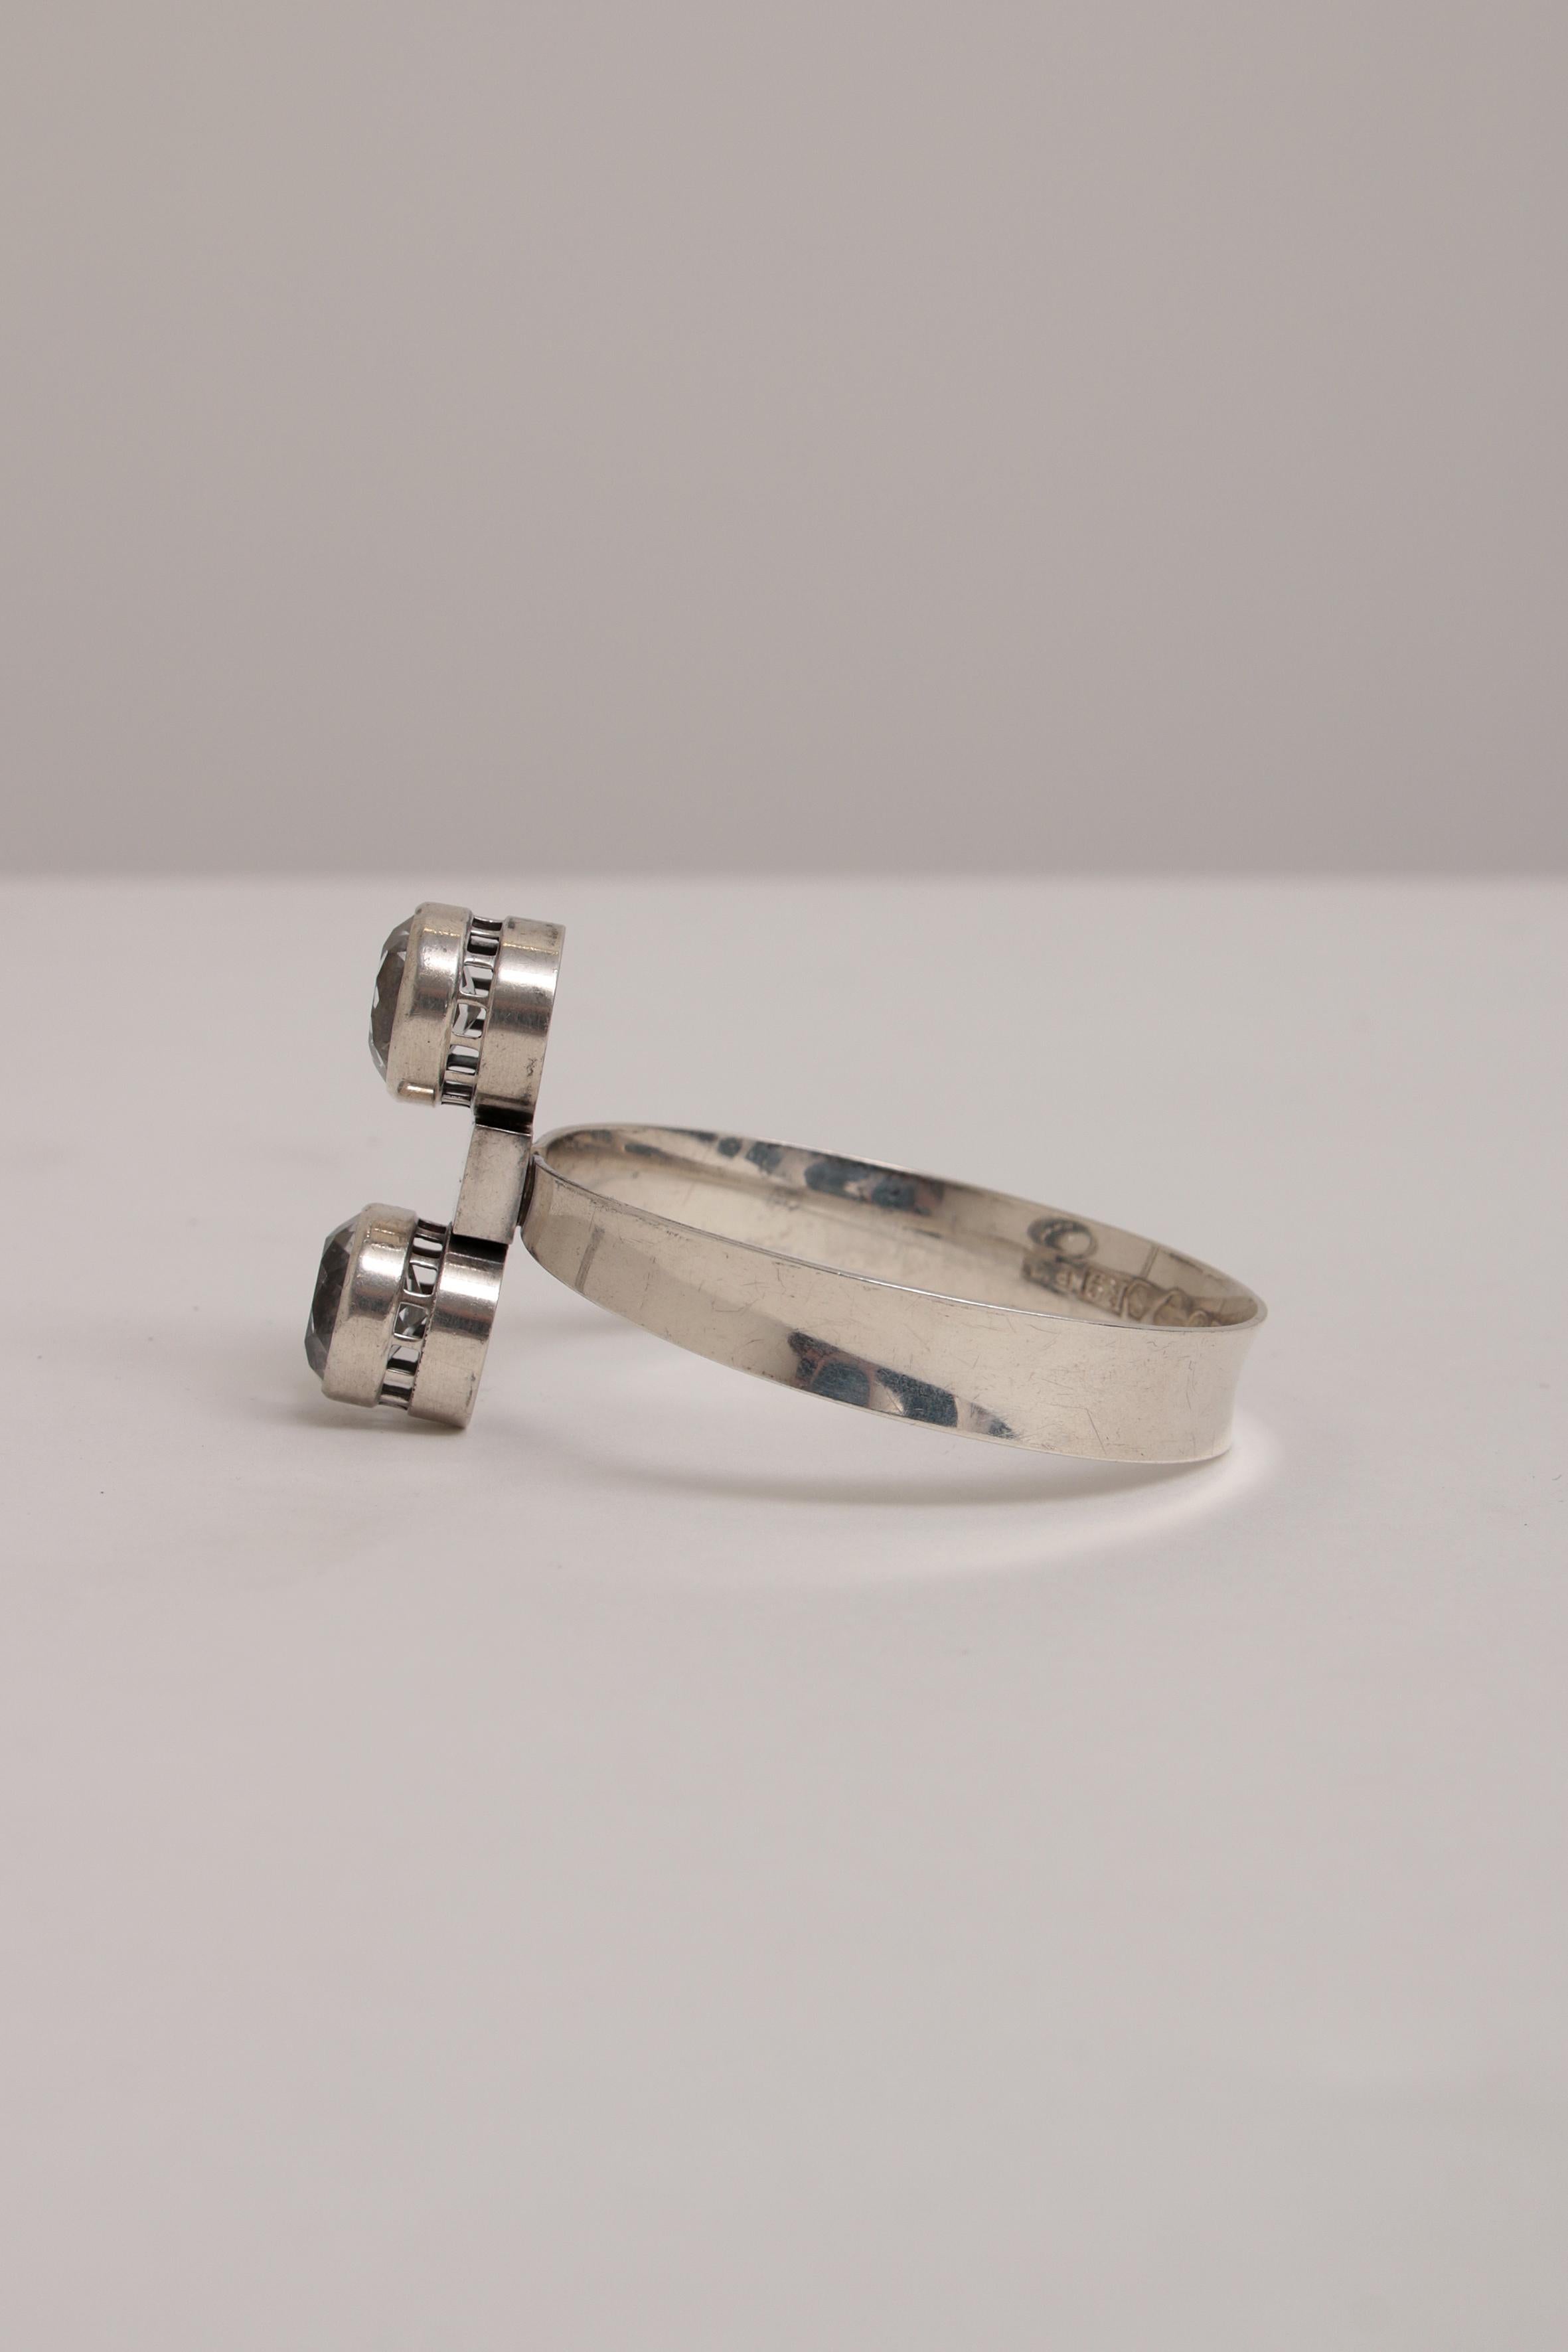 Schönes Silberarmband mit geschliffenem Bergkristall, hergestellt von Alton, Falköping Schweden 1967 Jahresbuchstabe ist R9.

Schönes Silberarmband.
Der Bergkristall ist gut in einem massiven Silberrand eingefasst.
Der silberne Rahmen mit der